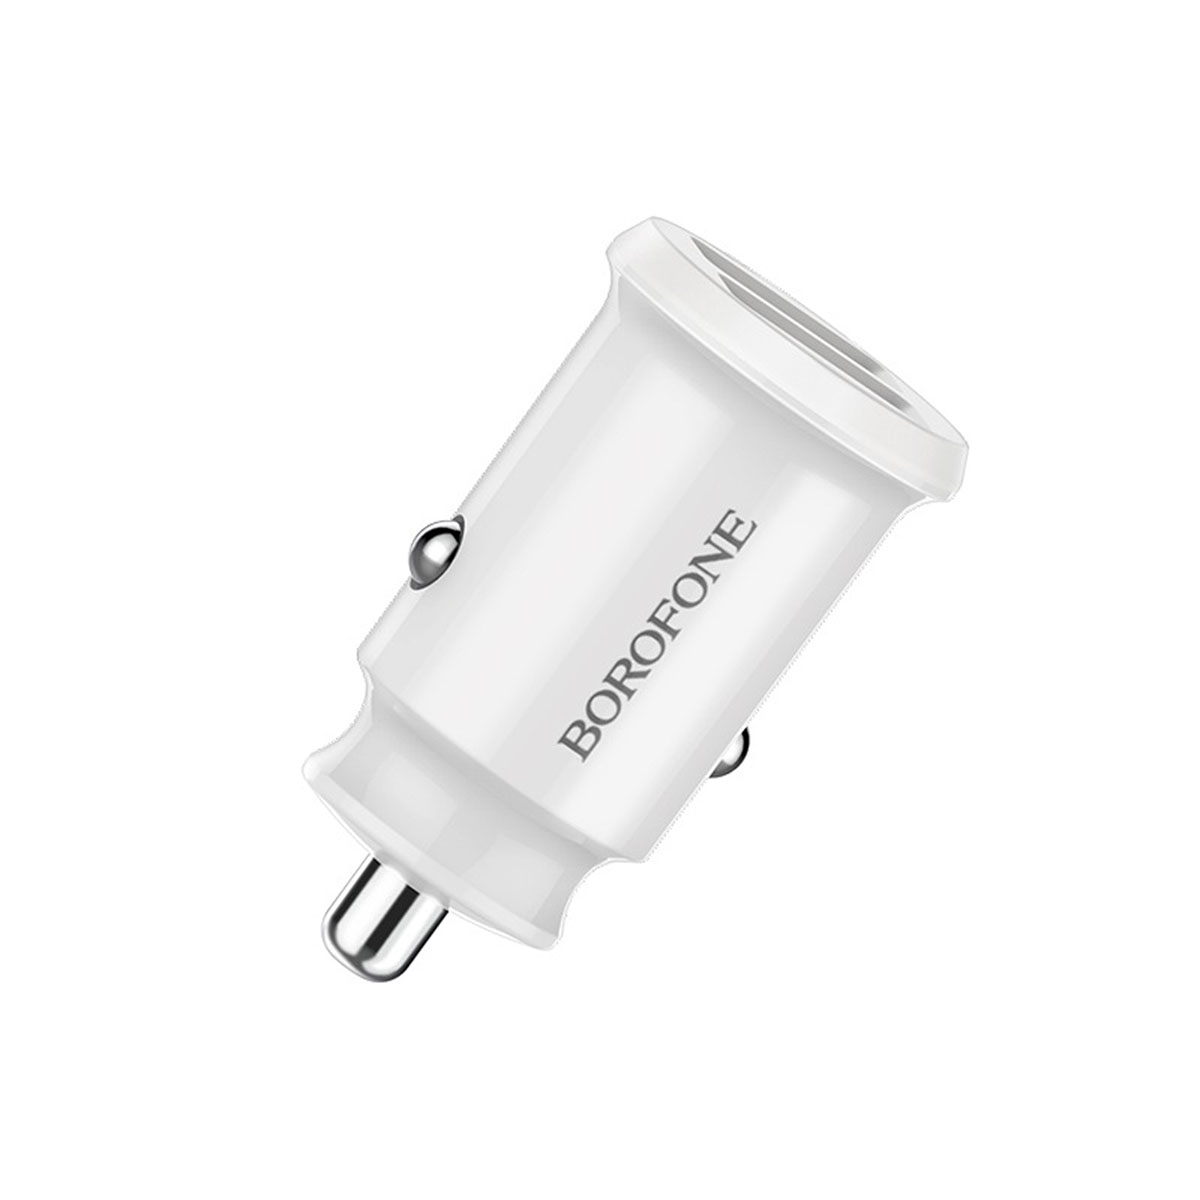 АЗУ (Автомобильное зарядное устройство) BOROFONE BZ8 MaxRide, 2.4А, 2 USB, цвет белый